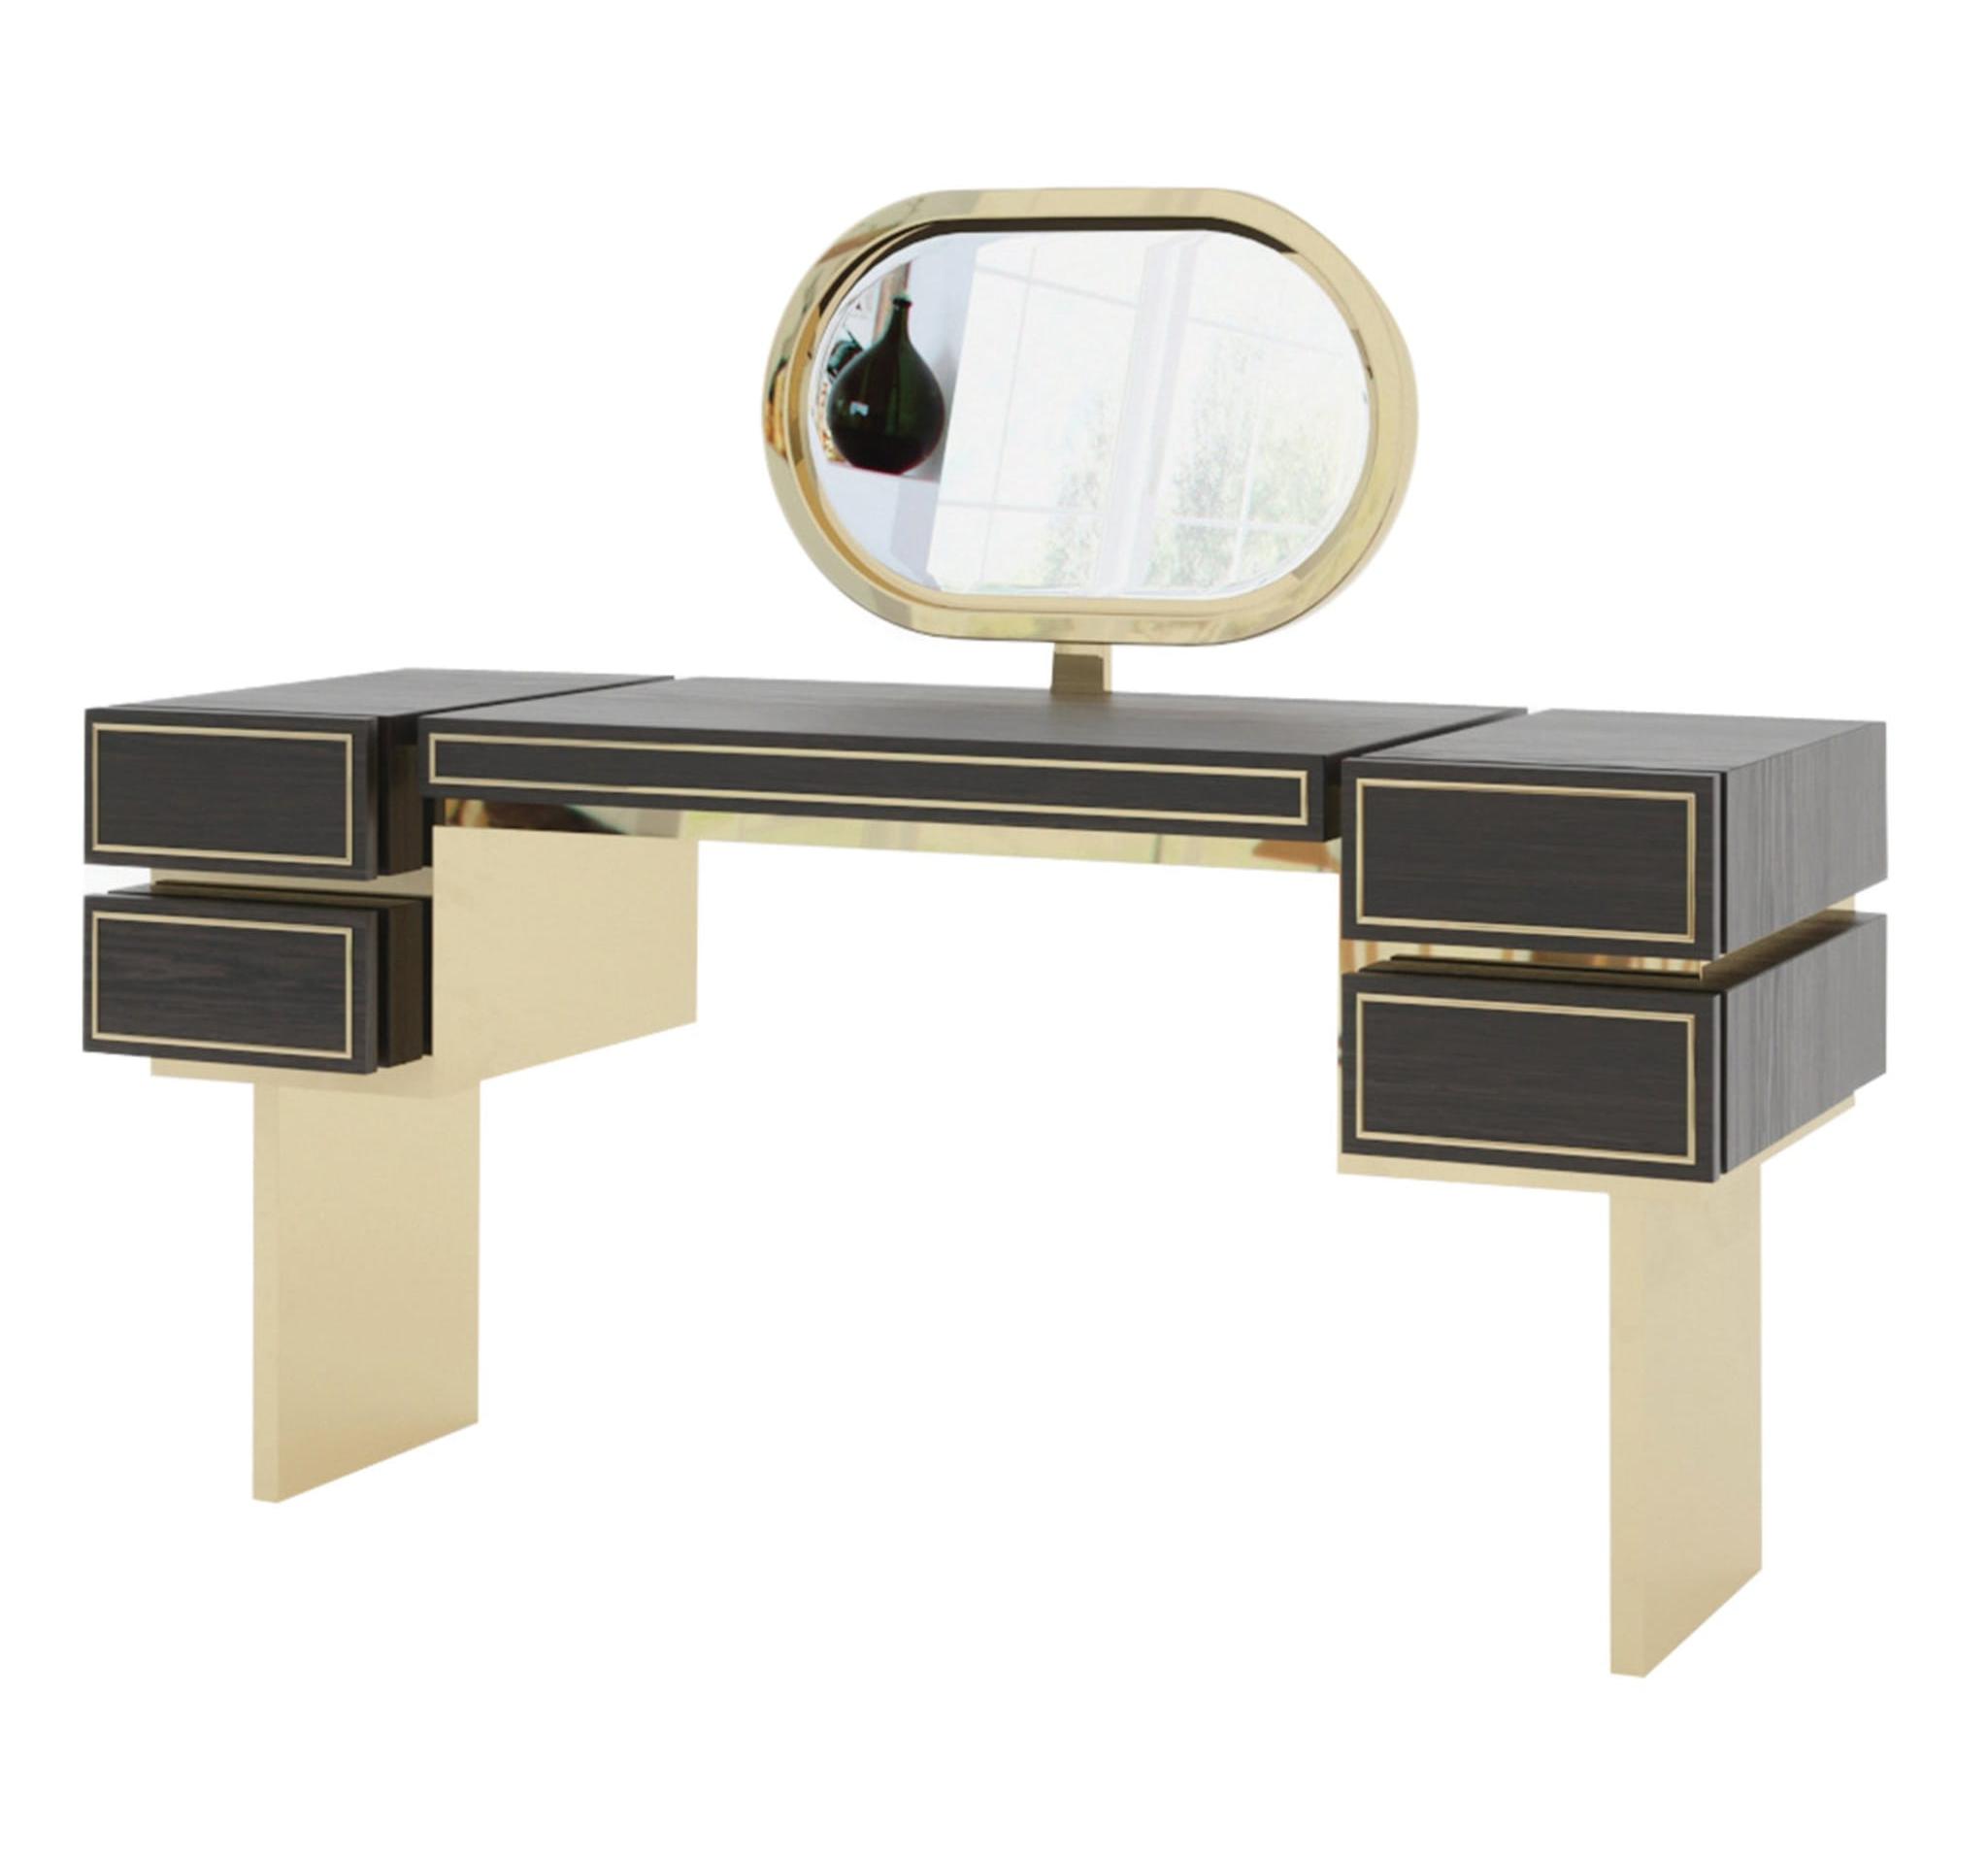 Leimert Designer Modern Vanity Table